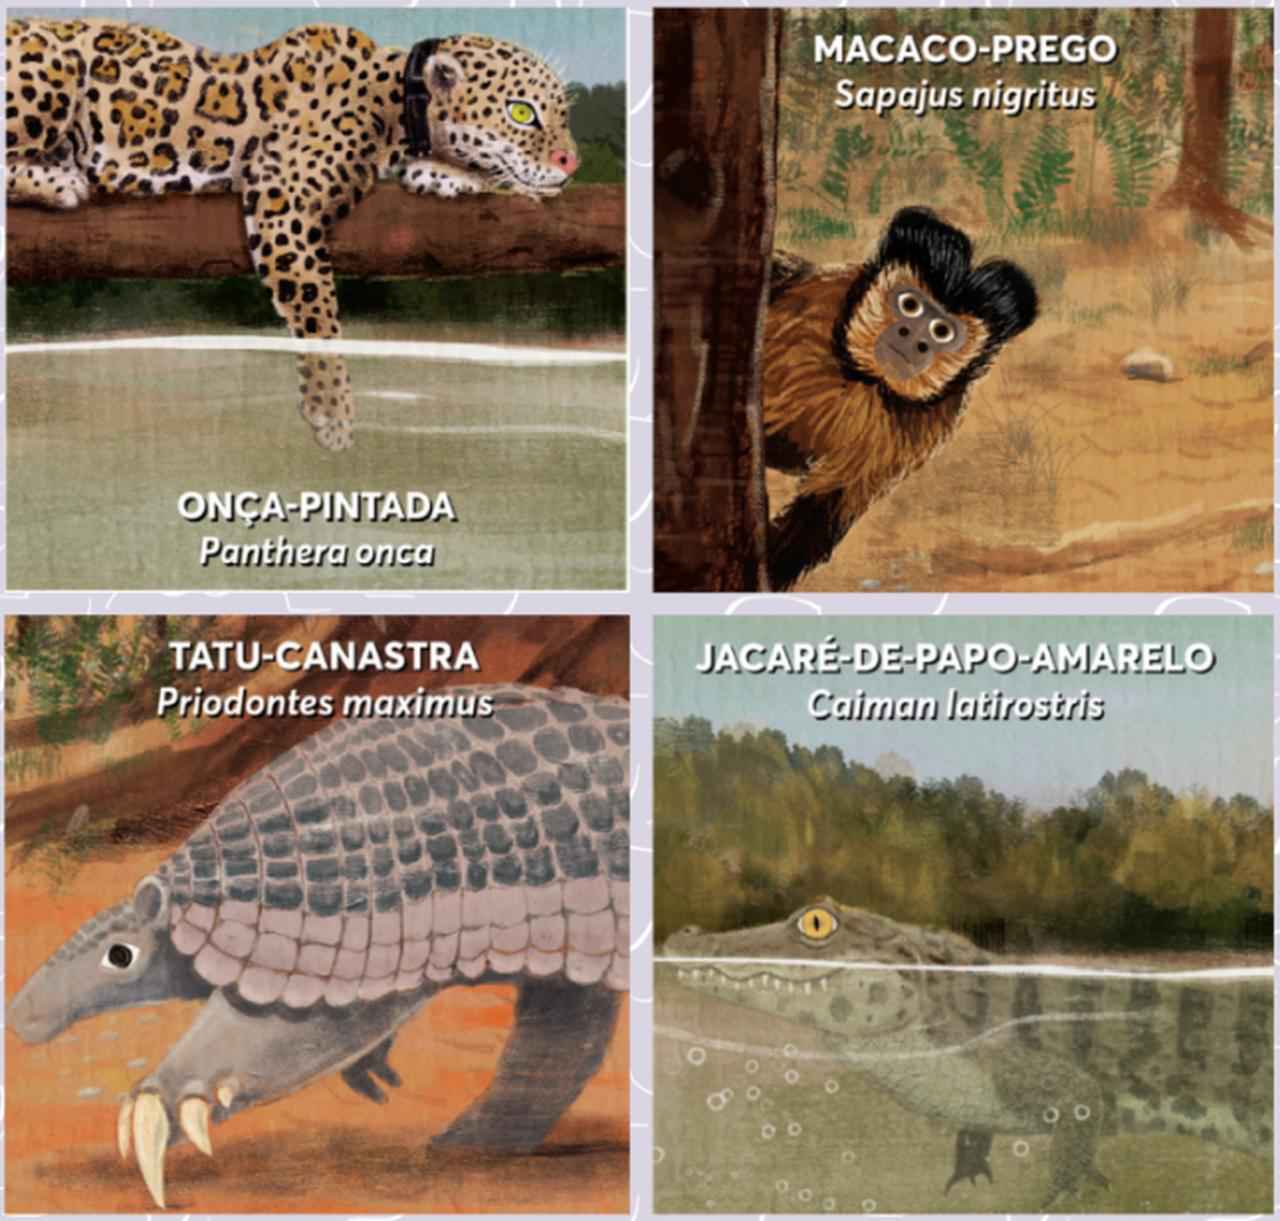 Algumas das espécies retratadas no álbum